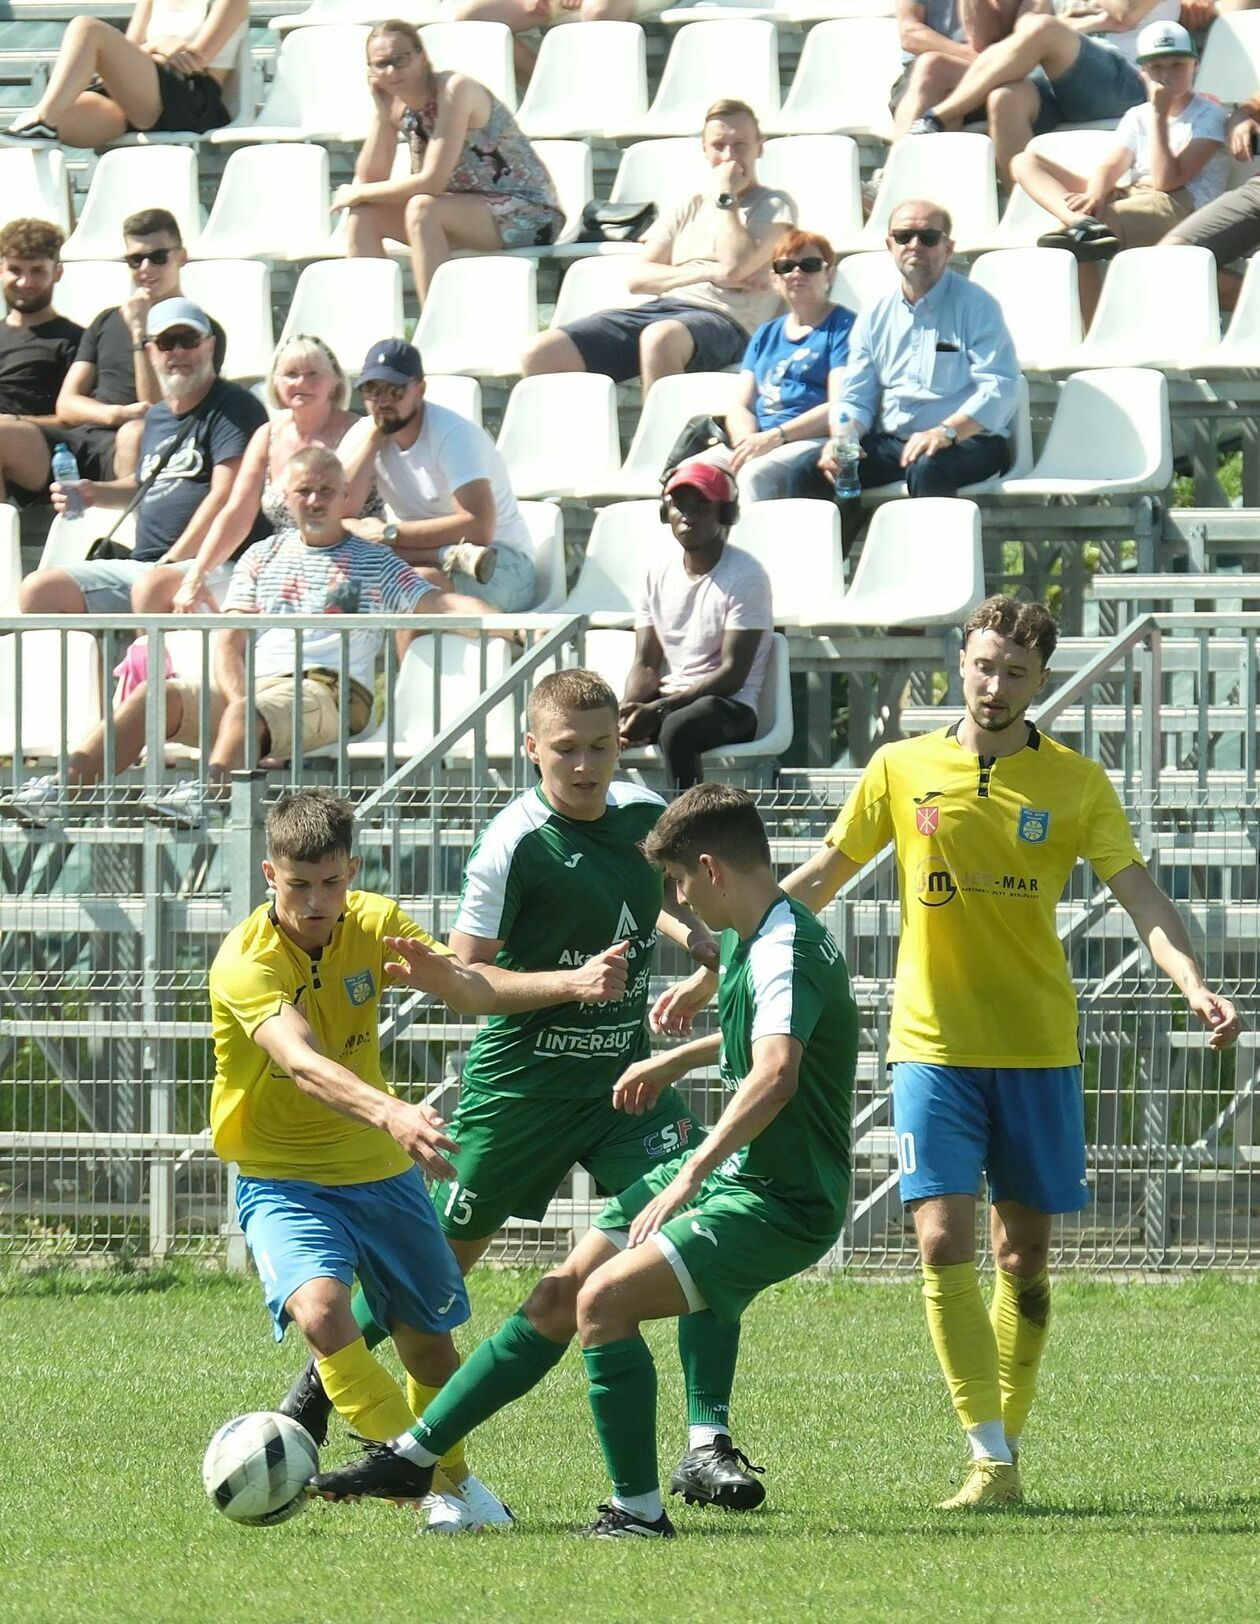  Lublinianka vs Stal Kraśnik 0:2 (zdjęcie 29) - Autor: DW